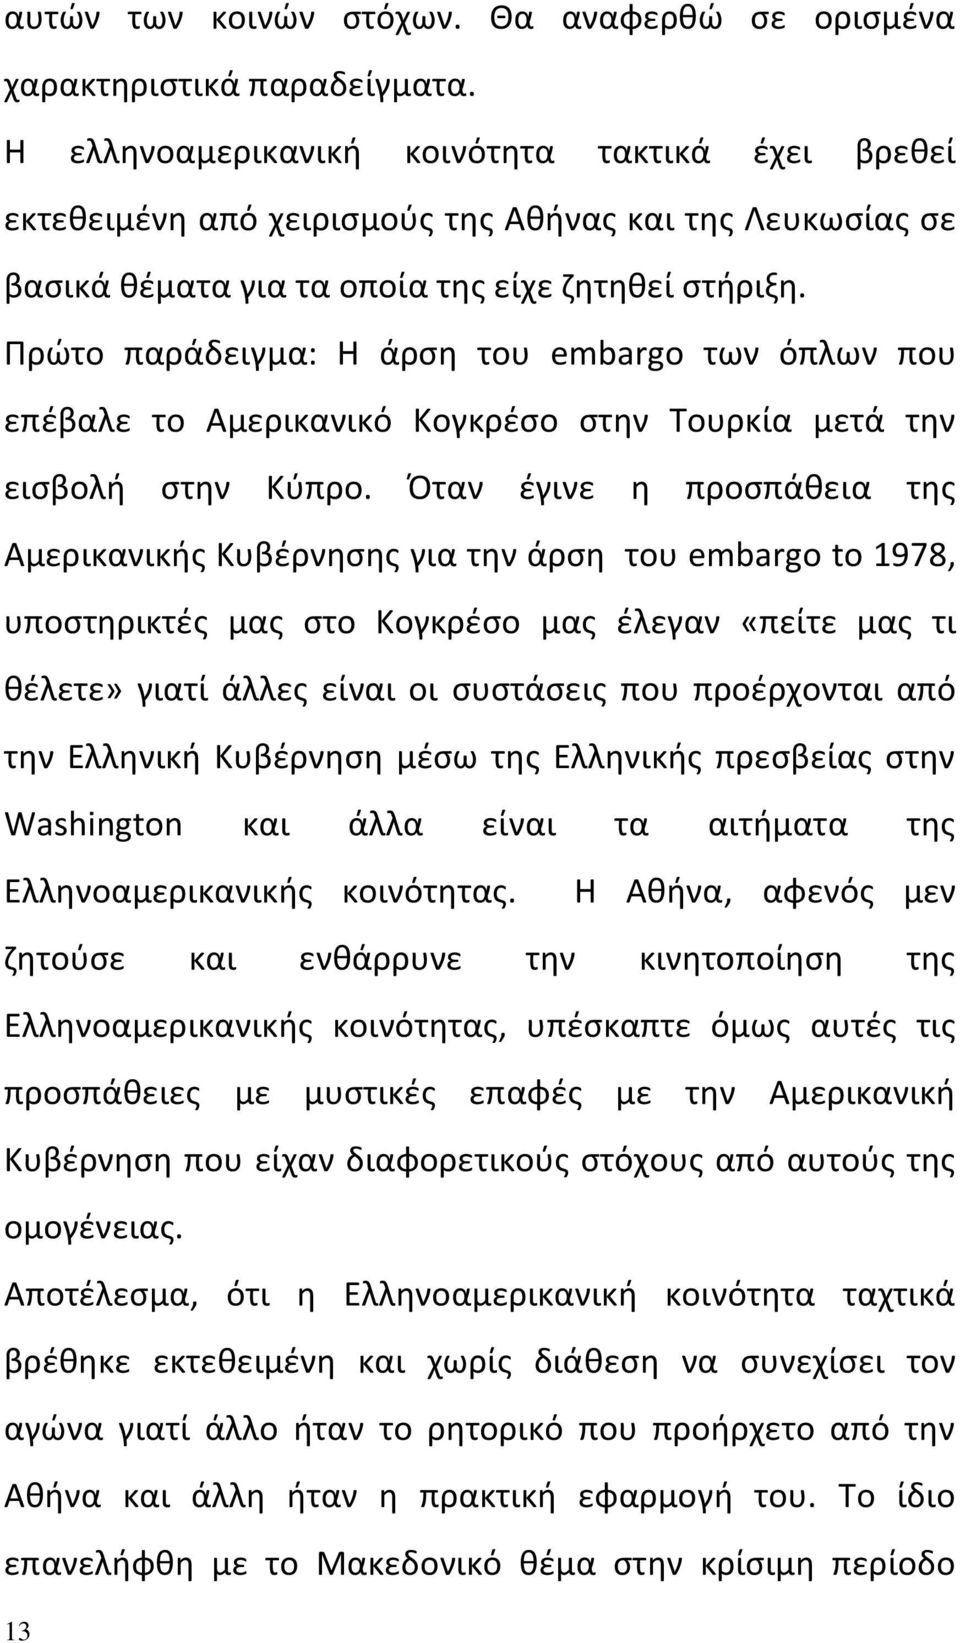 Πρώτο παράδειγμα: Η άρση του embargo των όπλων που επέβαλε το Αμερικανικό Κογκρέσο στην Τουρκία μετά την εισβολή στην Κύπρο.